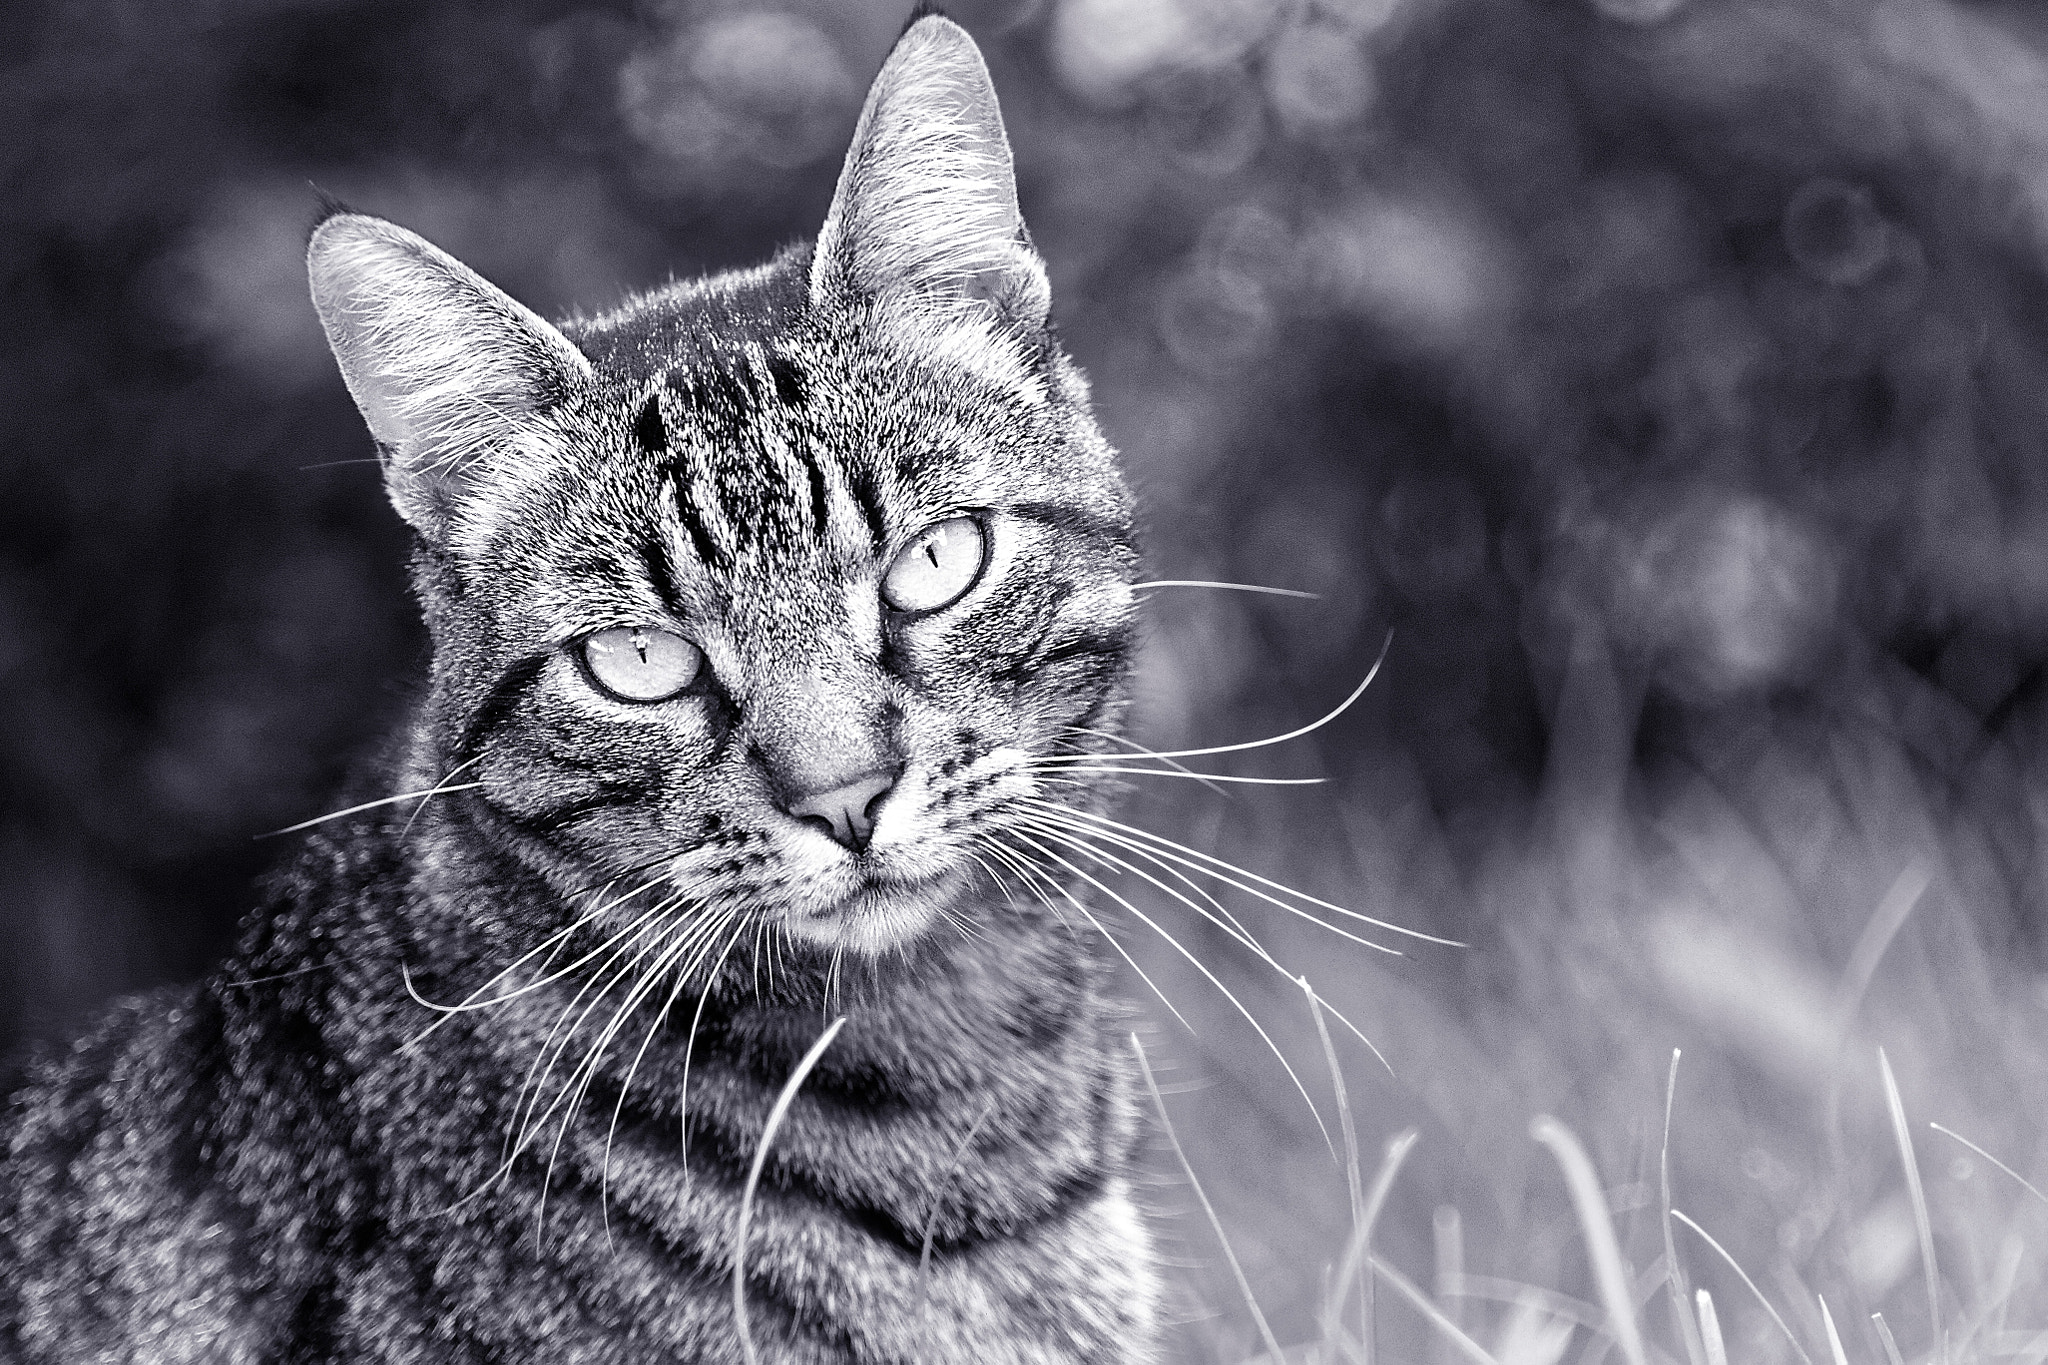 Canon EOS 7D sample photo. Cat portrait photography